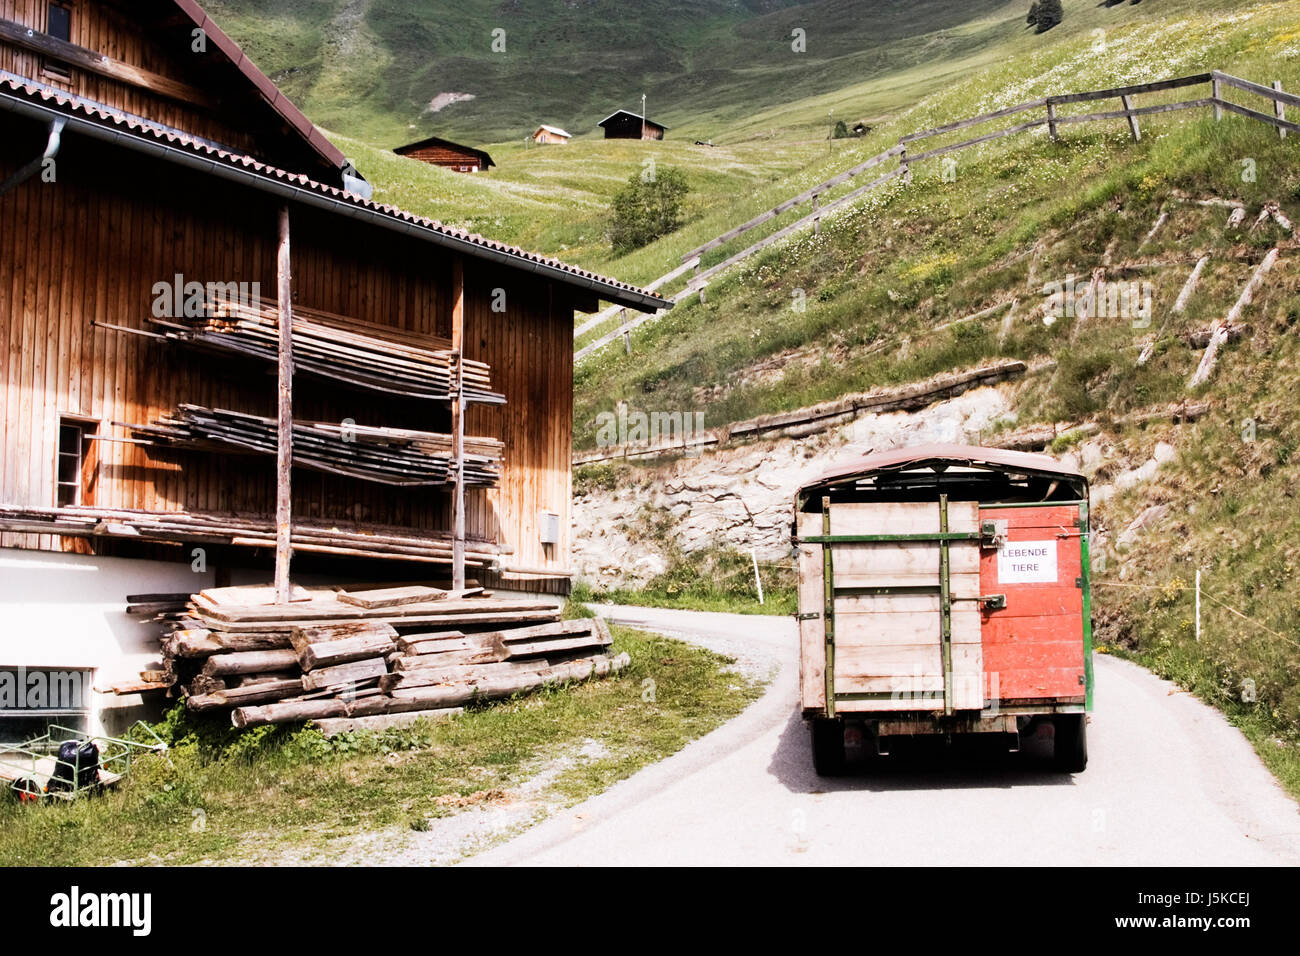 Agricultura La agricultura animal derechos humano suiza grisones vaca de transporte Foto de stock